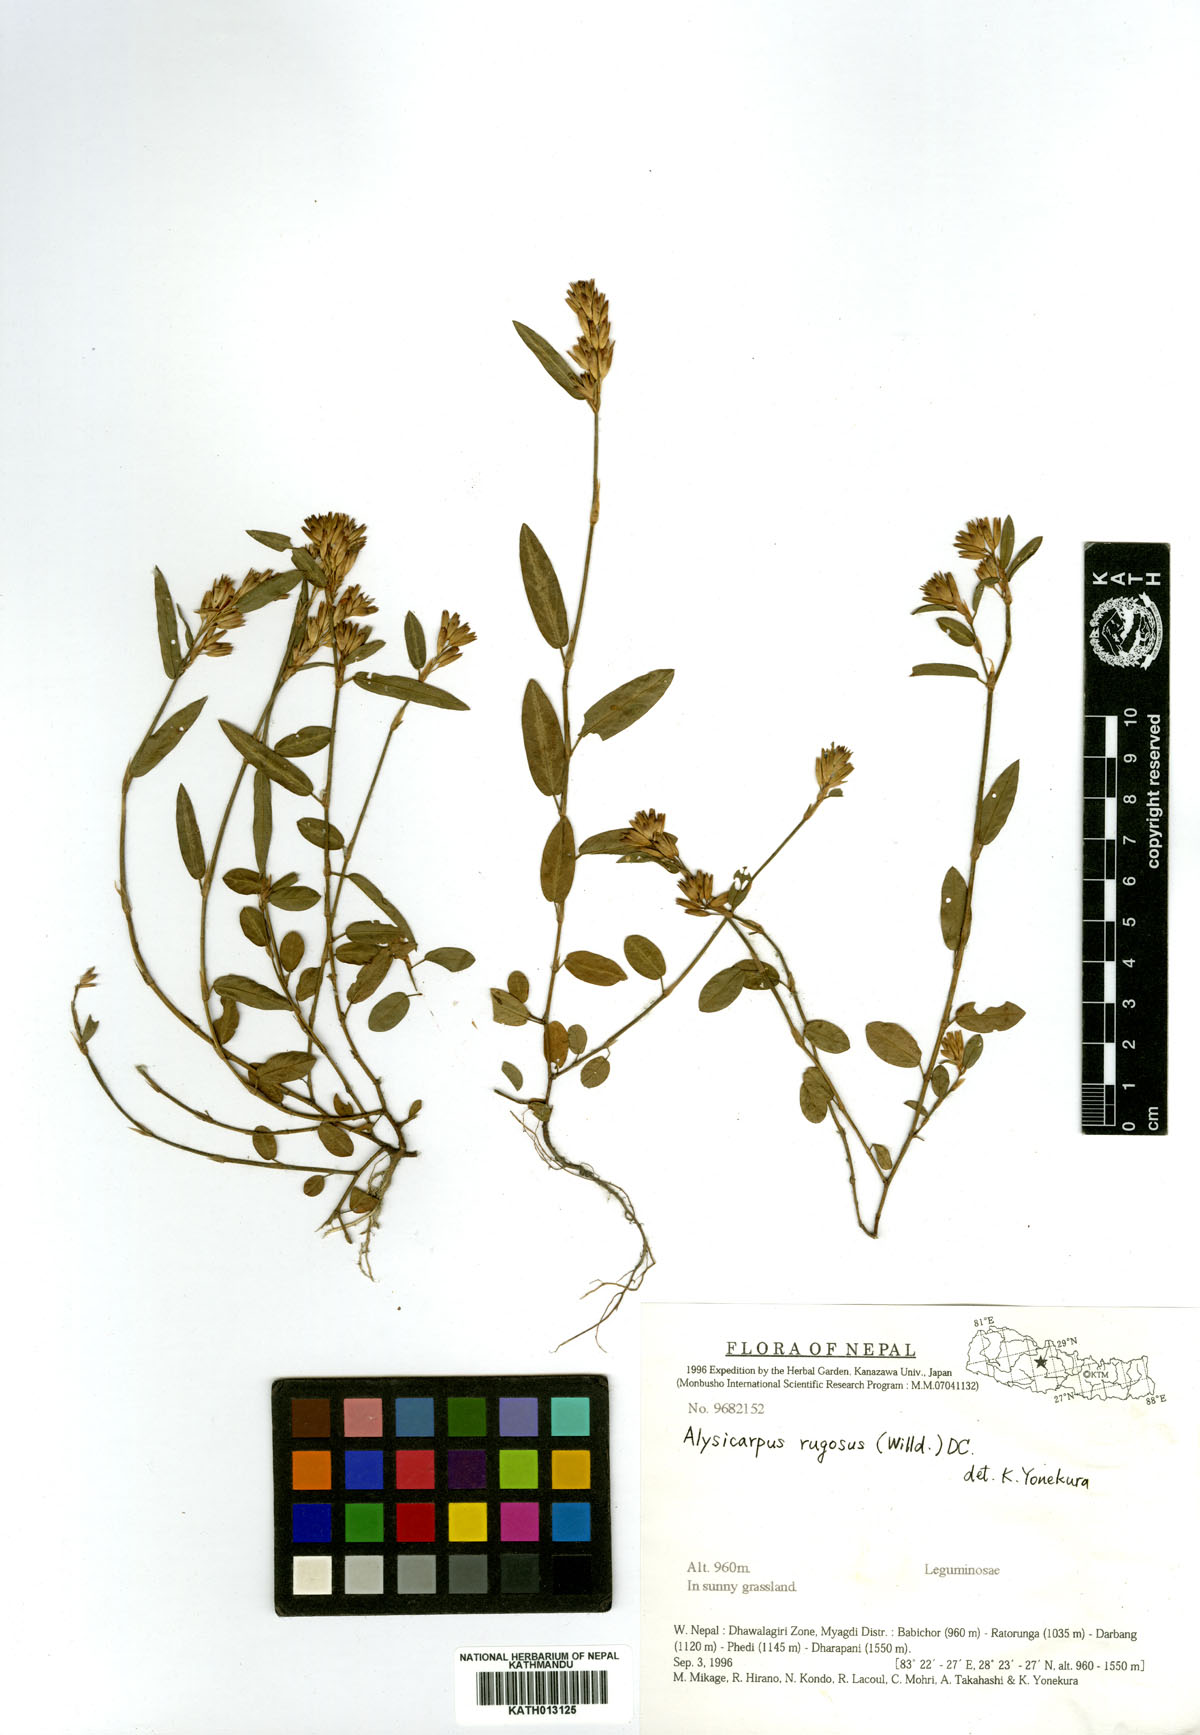 Alysicarpus rogosus (Willd.) DC.